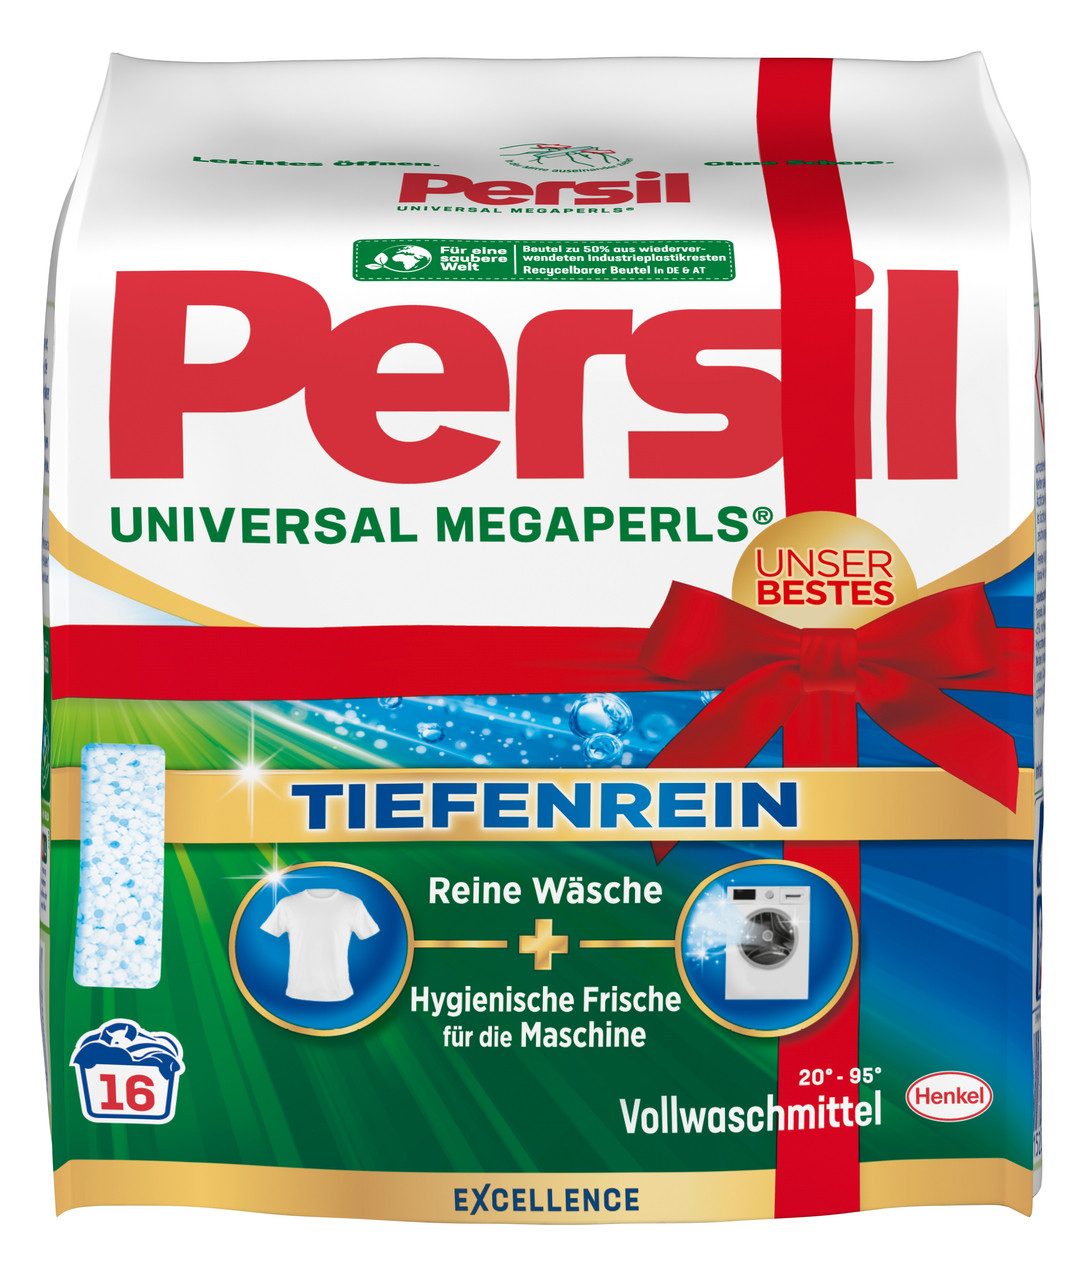 Persil Universal Megaperls 16 WL Vollwaschmittel (1-St. Pulver Waschmittel mit Tiefenrein)